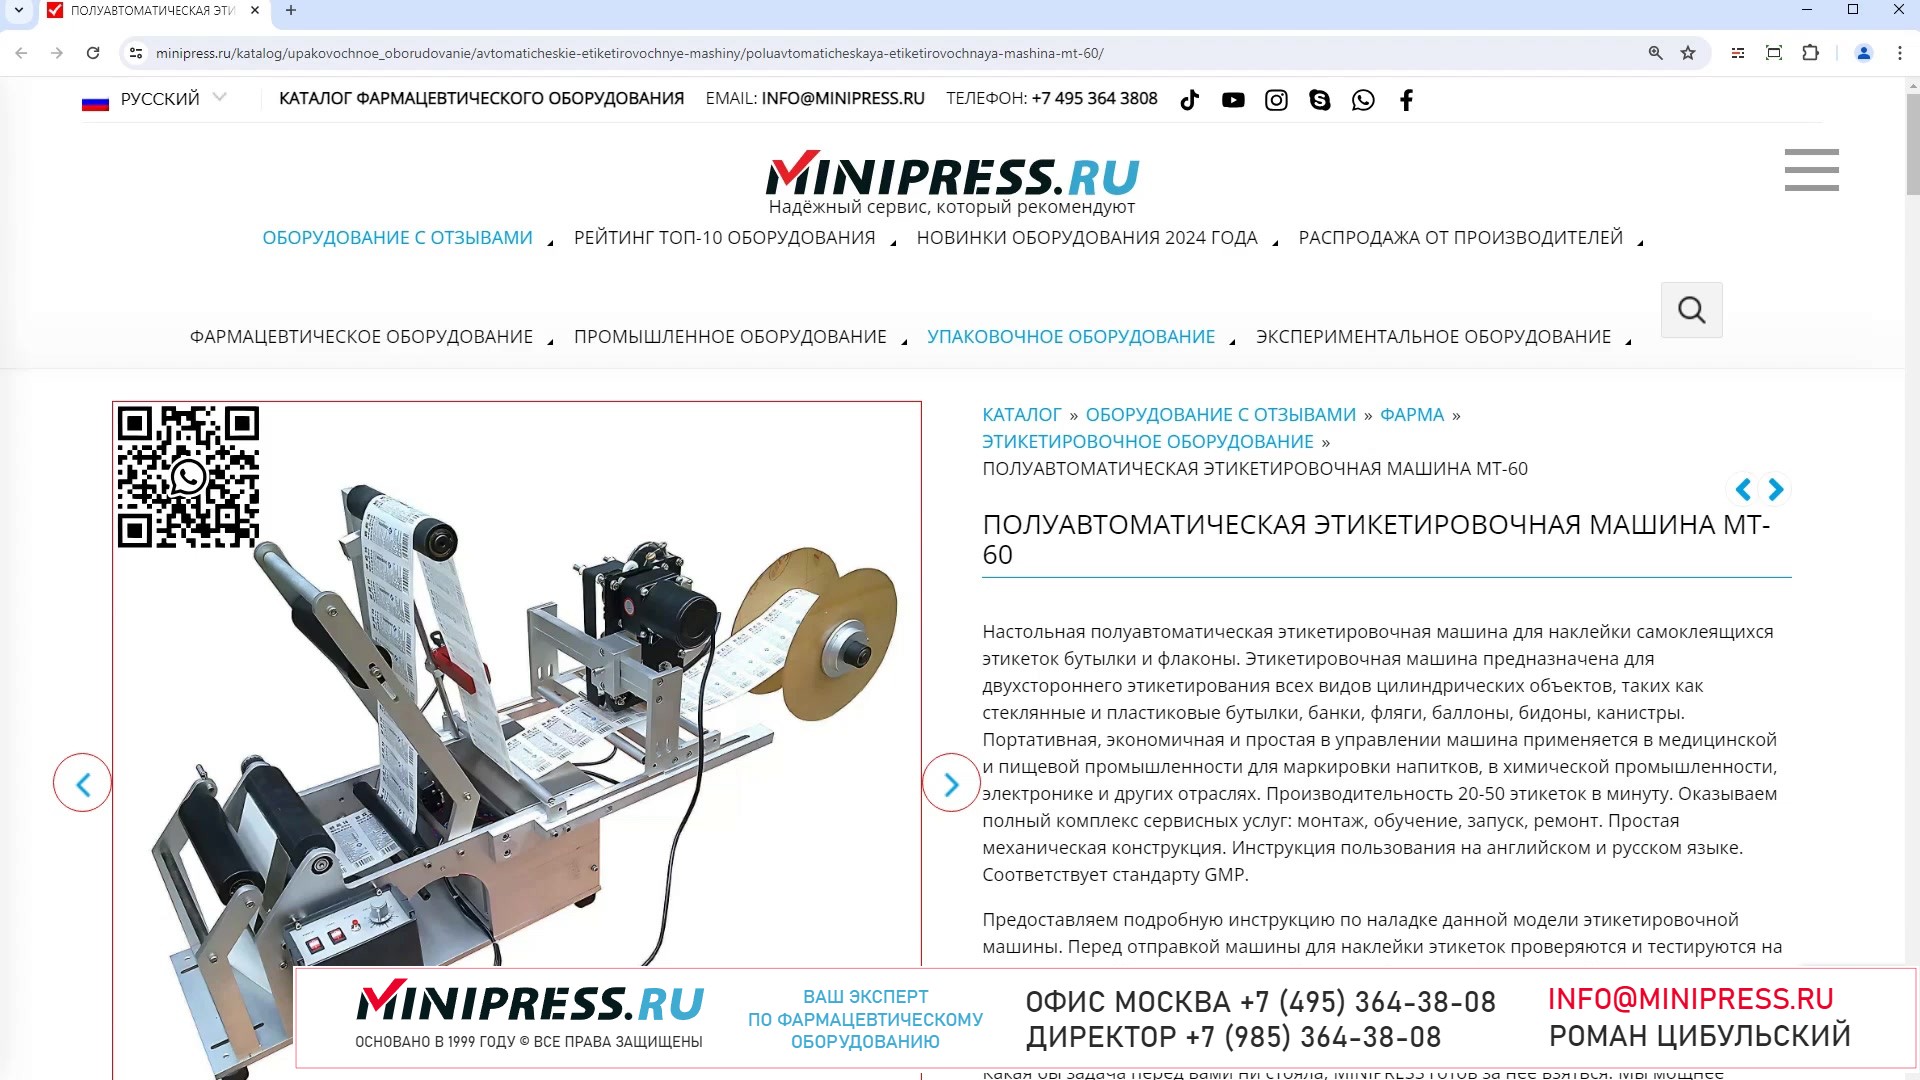 Minipress.ru Полуавтоматическая этикетировочная машина MT-60